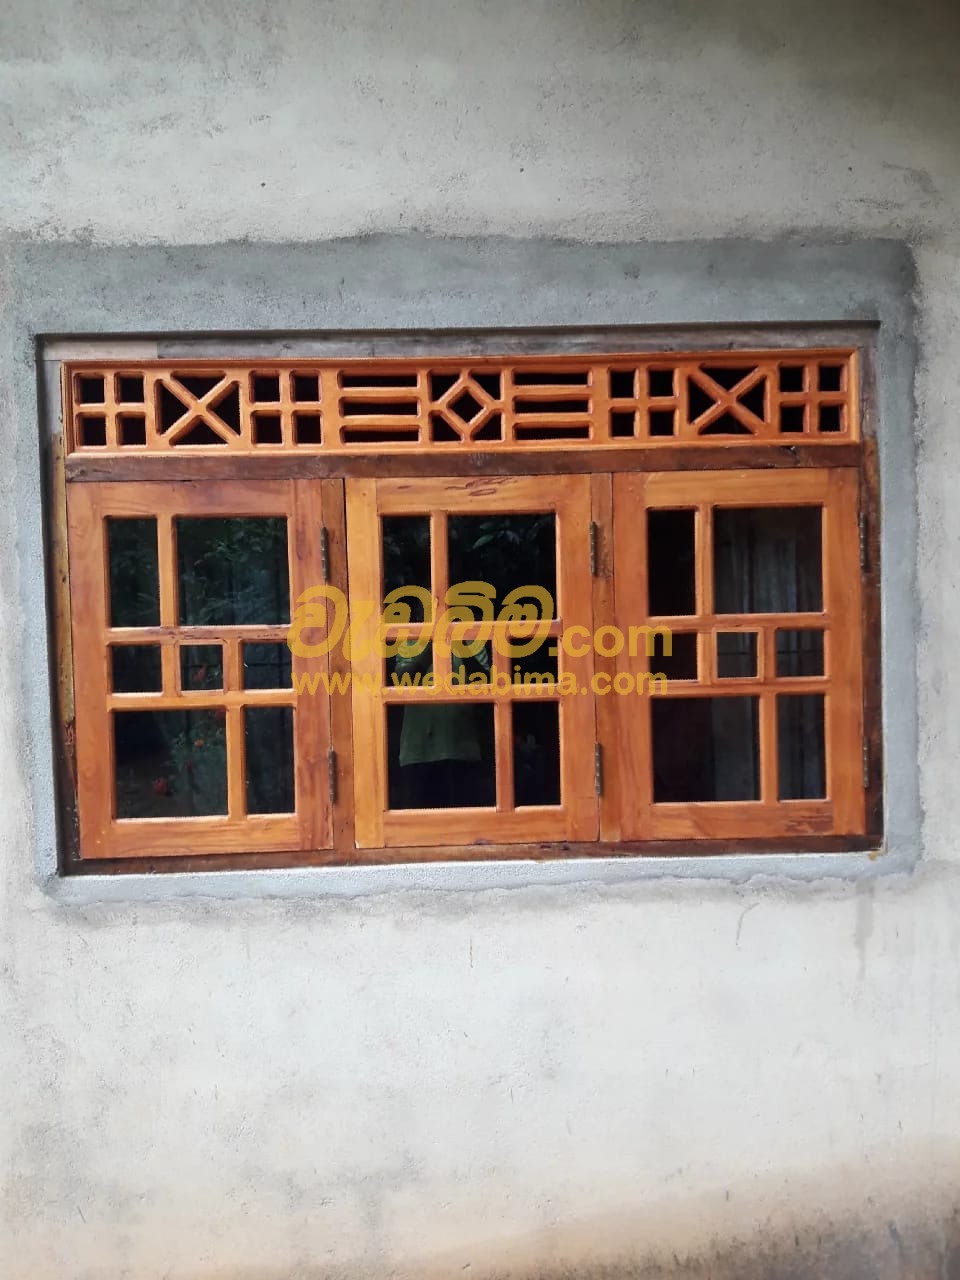 sri lankan wooden window frames designs